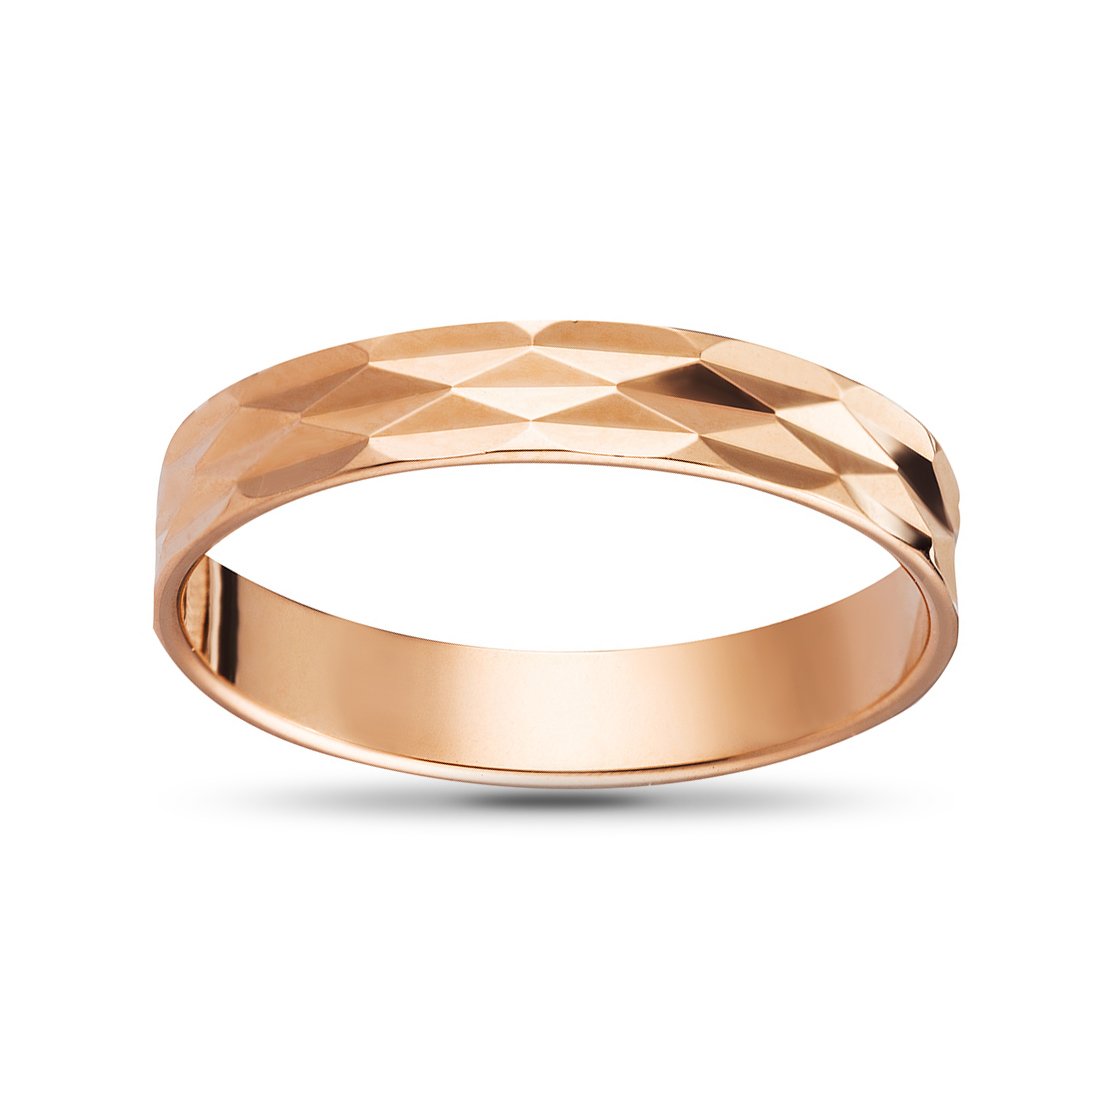 Золотое кольцо с гранями. Золотое кольцо с алмазной огранкой. Кольца с алмазной гранью золотые обручальные. Кольцо с алмазной гранью 585. Обручальное кольцо из золота с алмазной гранью артикул: 110103.